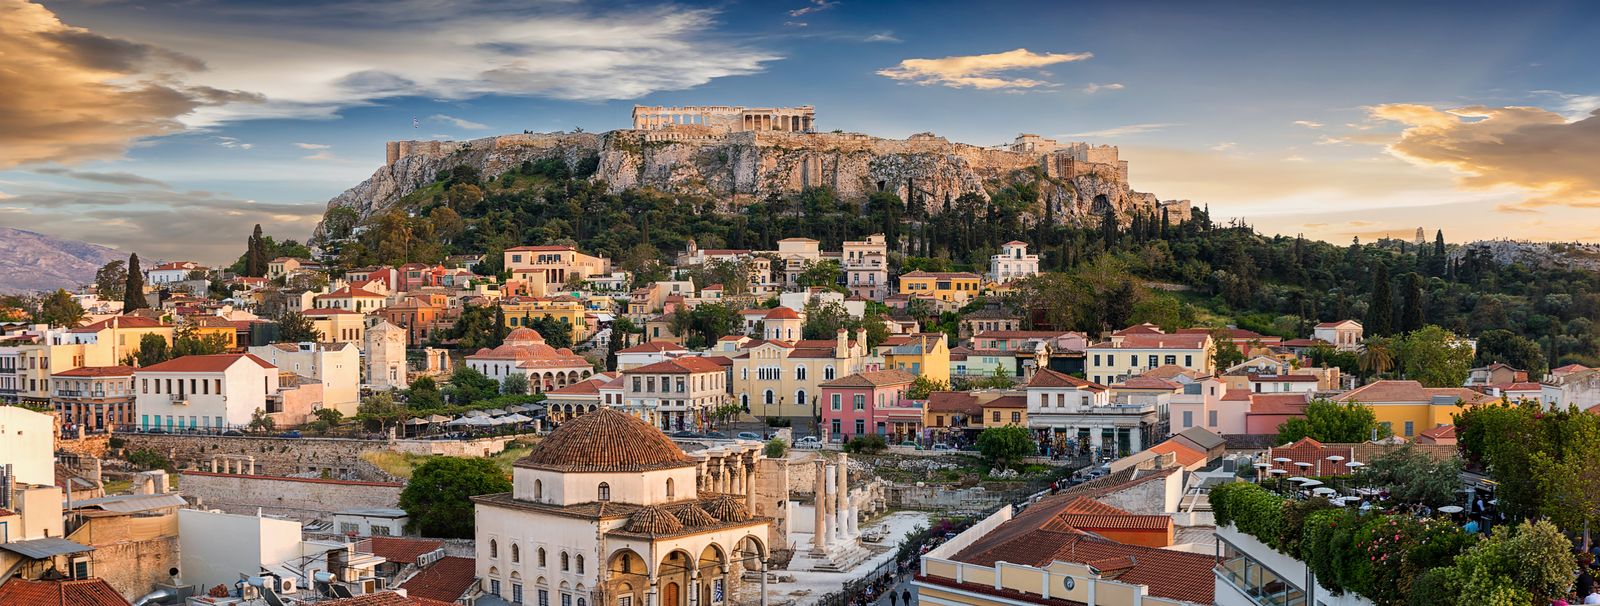 Vacanta Atena, Europa! Itinerar si obiective turistice